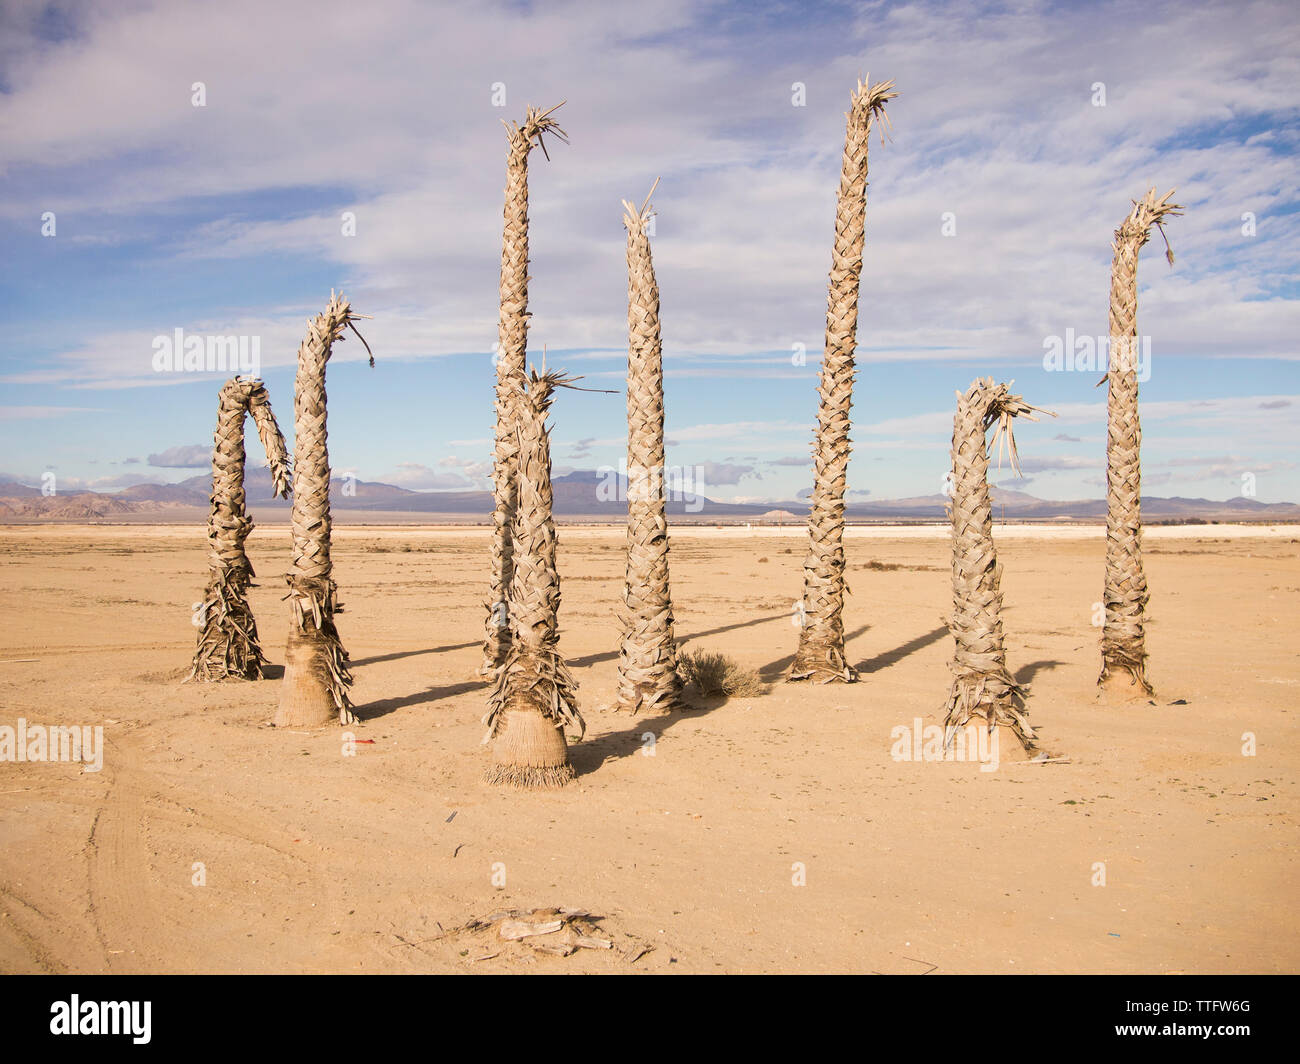 Un clúster de muertos palmeras stand en el reseco desierto. Foto de stock